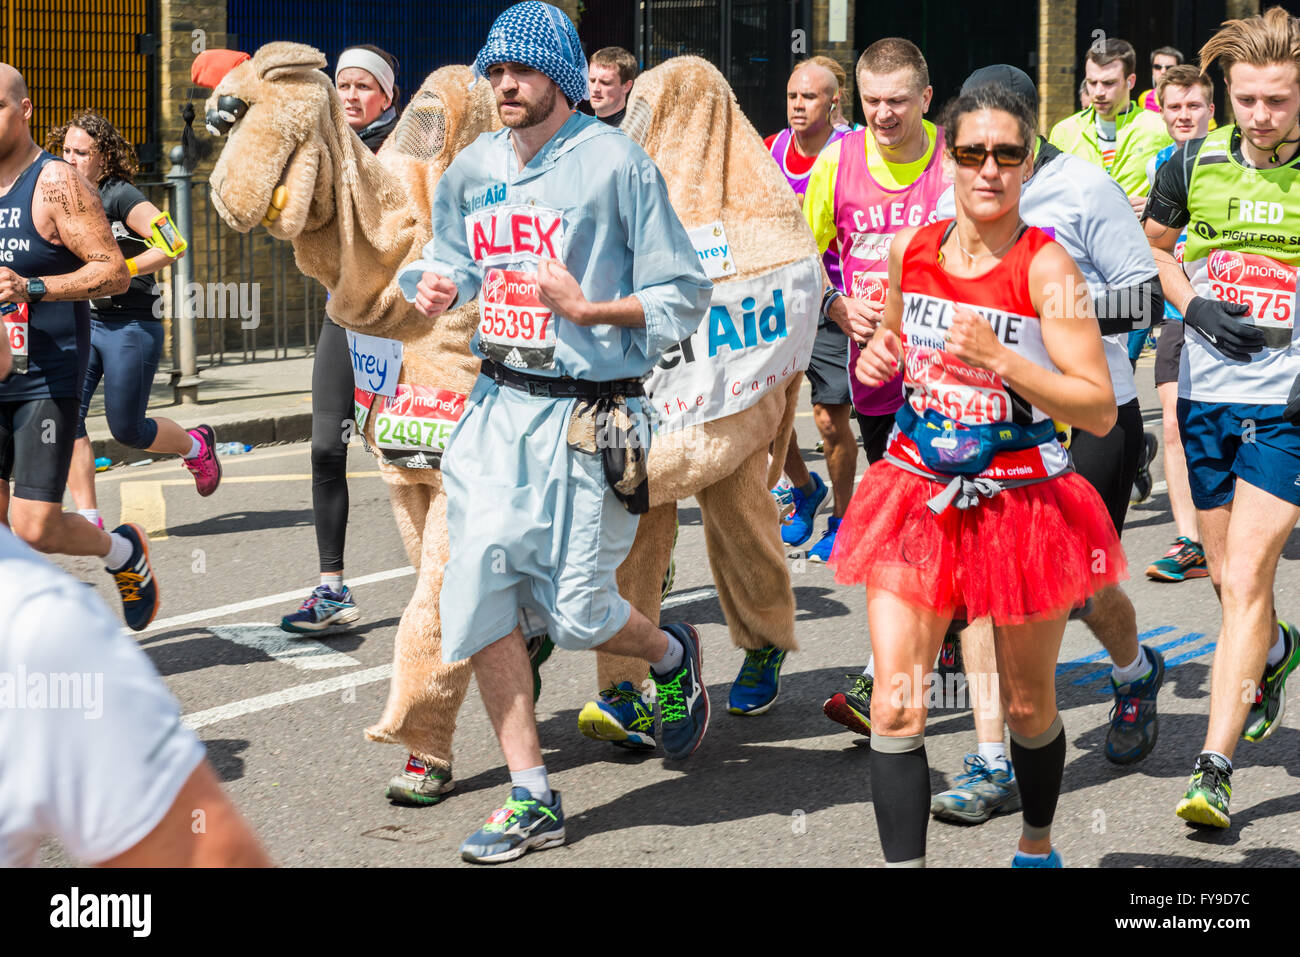 Londres, Royaume-Uni. 24 avril, 2016. Marathon de Londres 2016. Ossature en grand costume. Camel et costume bédouin Crédit : Elena/Chaykina Alamy Live News Banque D'Images